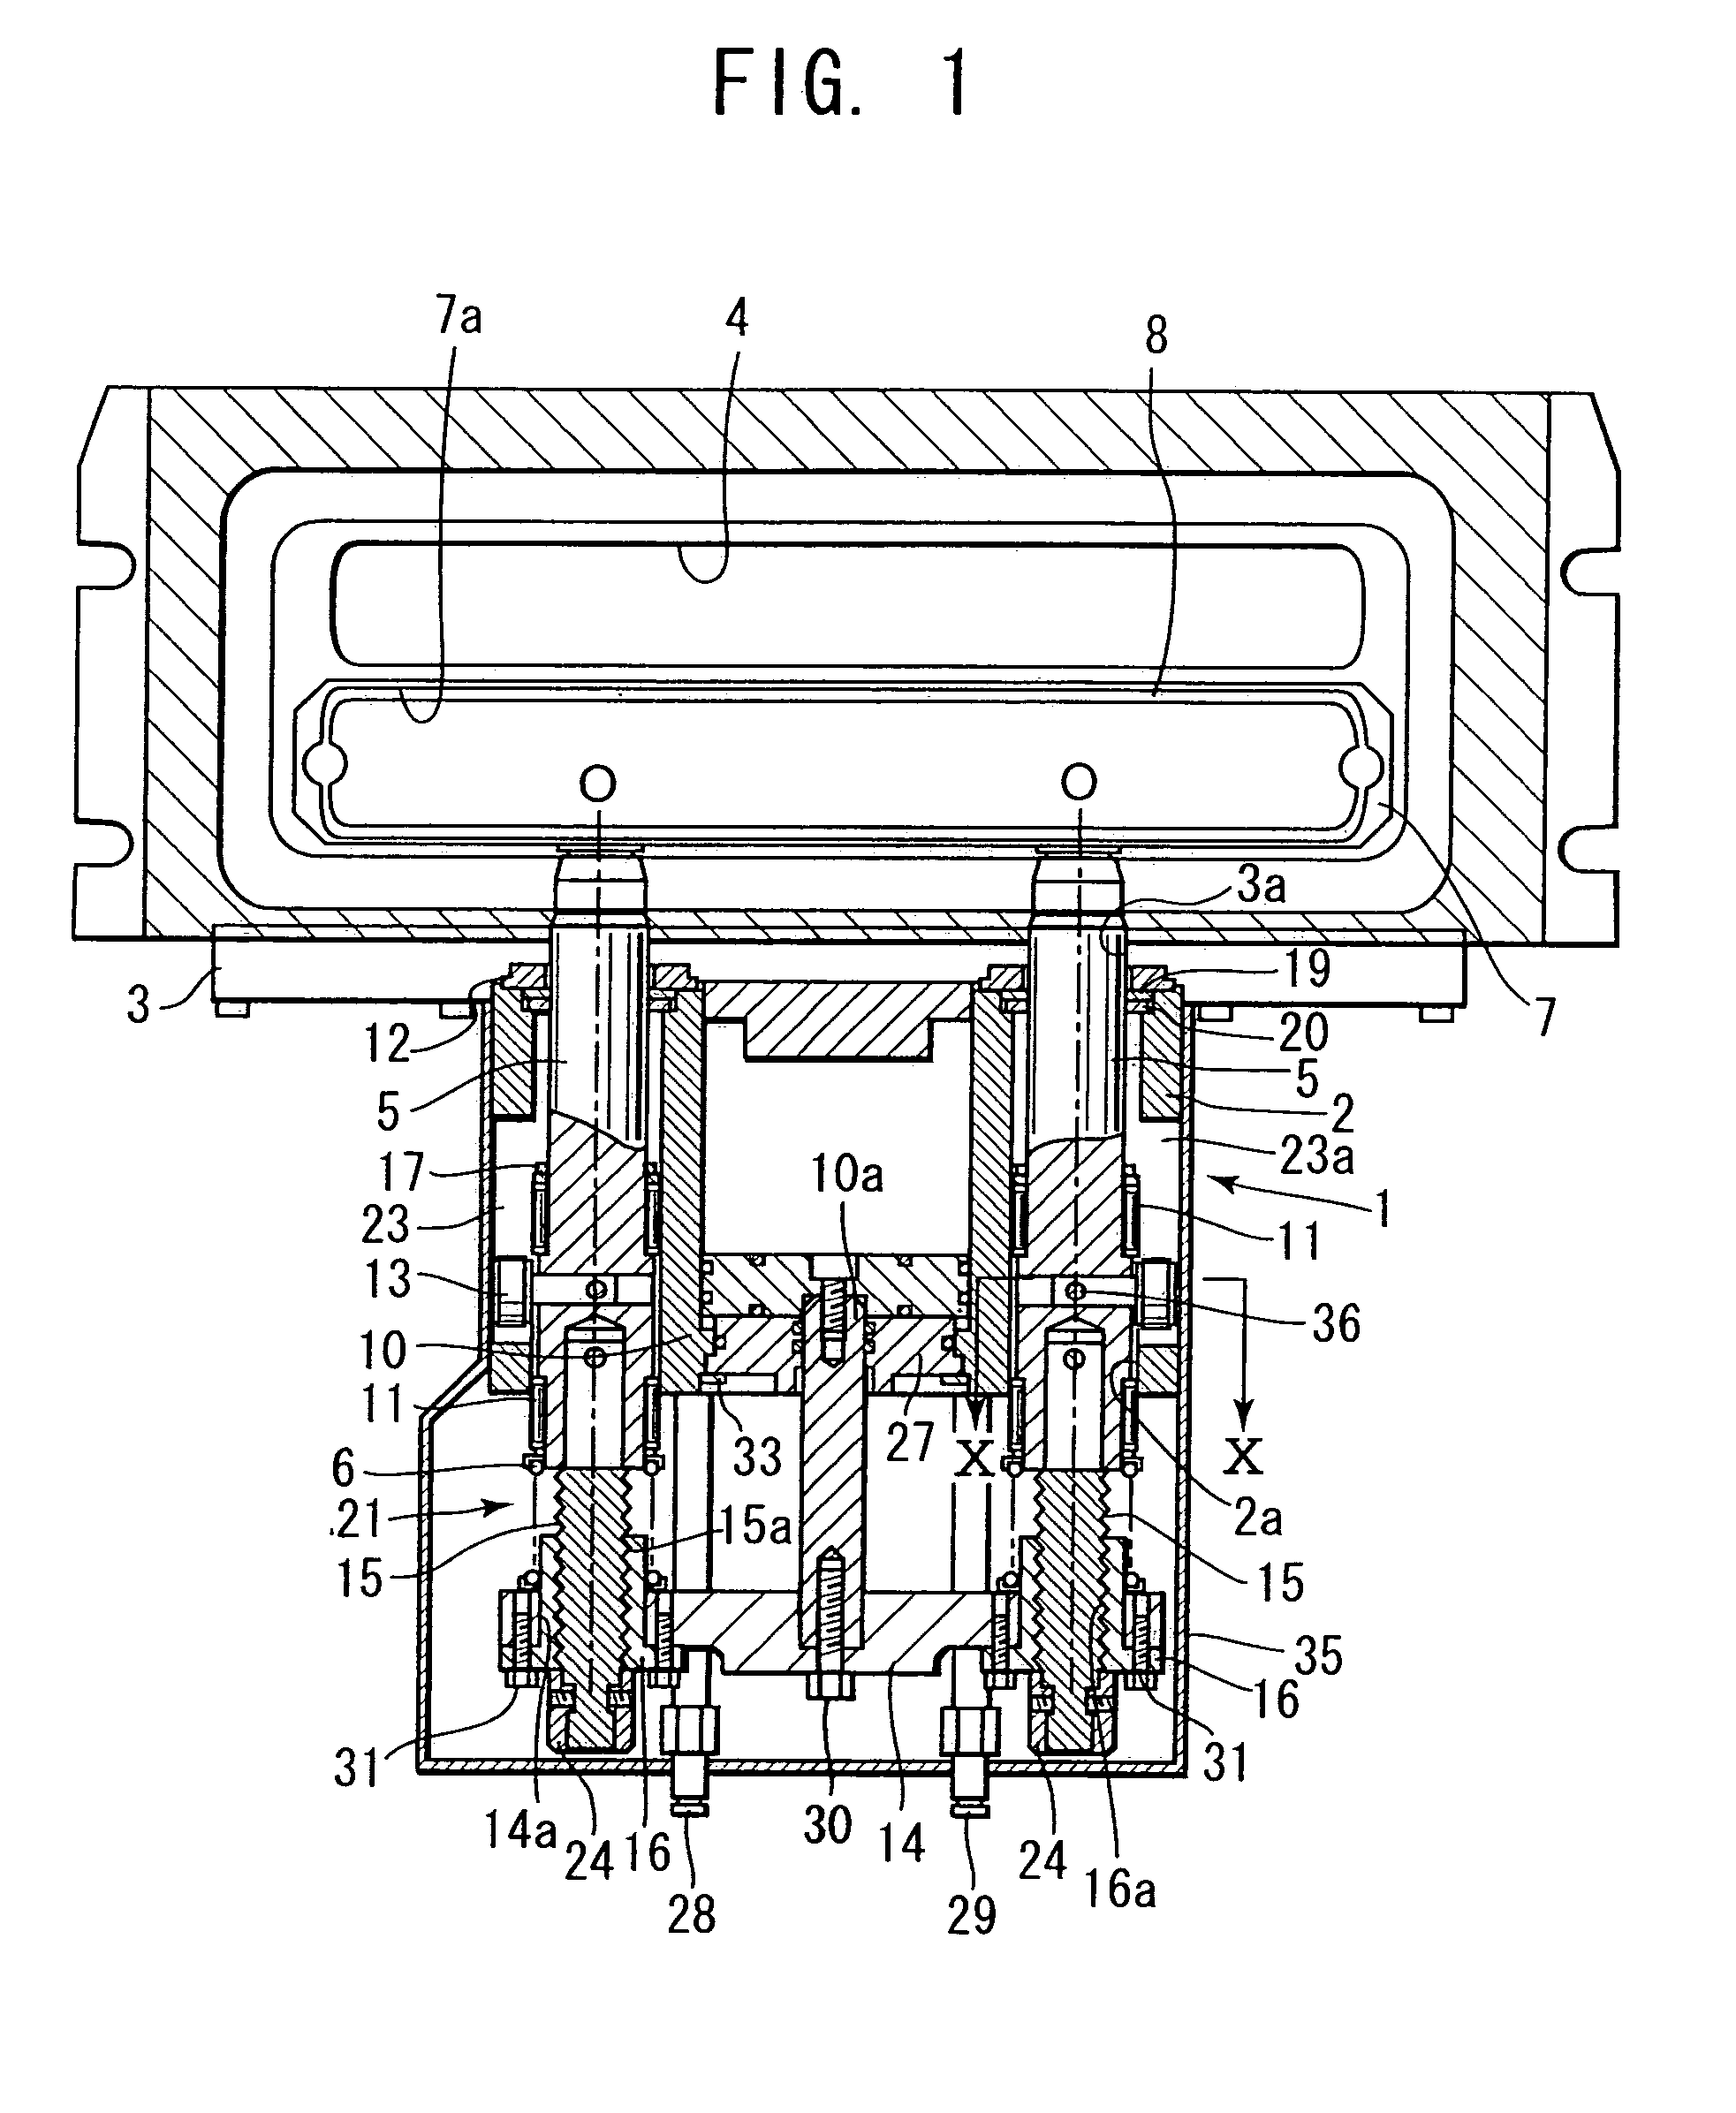 Non-rubbing gate valve for semiconductor fabrication apparatus